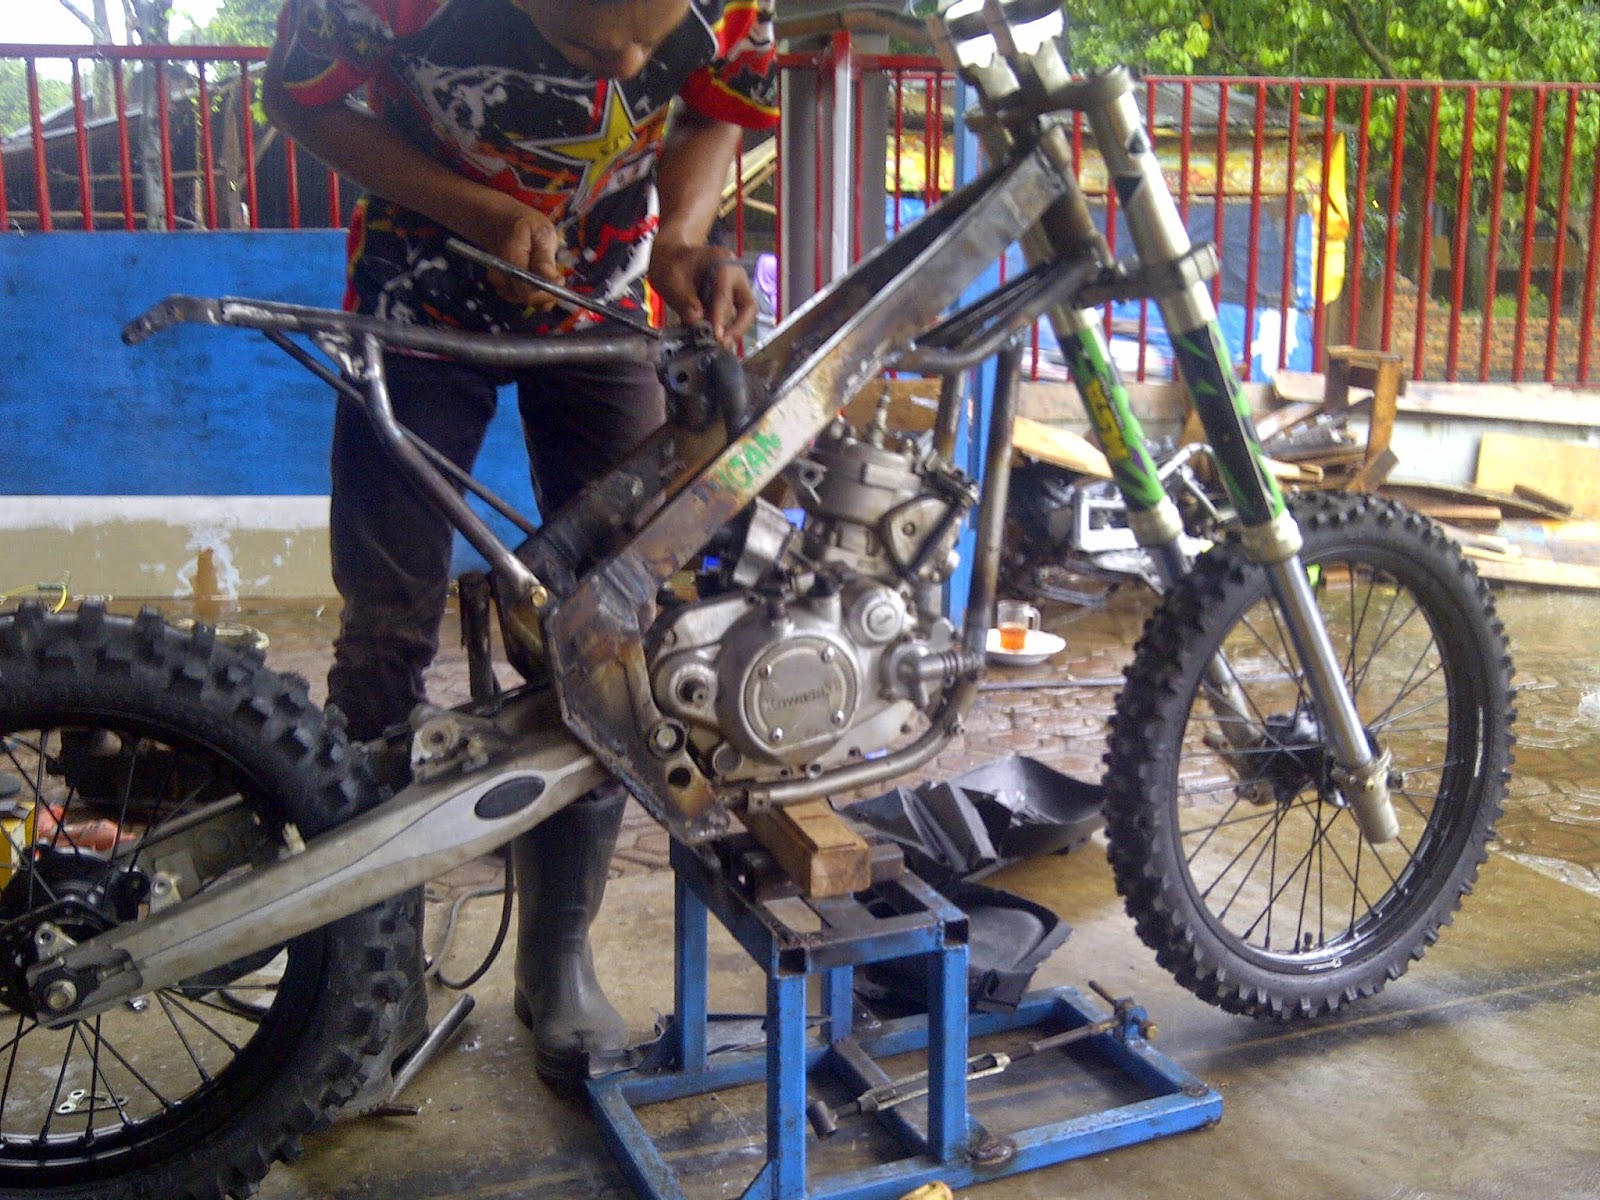 Download Ide 52 Modif Motor Ninja Trail Terbaru Lawang Motor